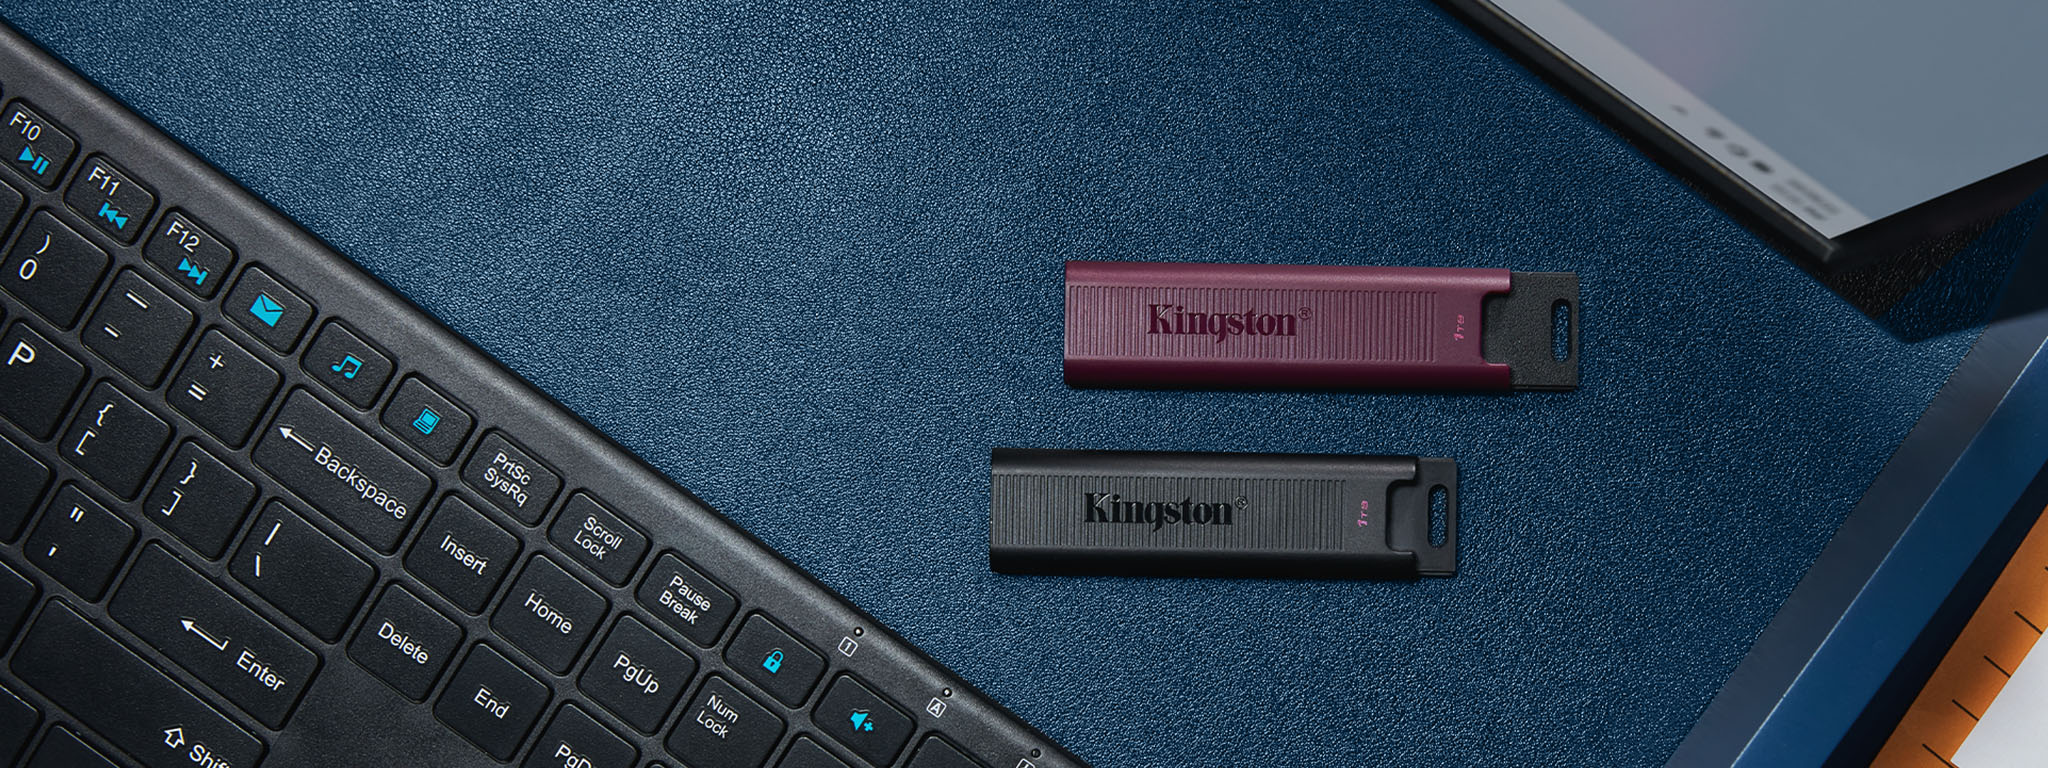 키보드와 모니터 사이에 놓인 DT Max 플래시 드라이브, USB-C(검은색) 및 USB-A(버건디색)의 오버헤드 뷰